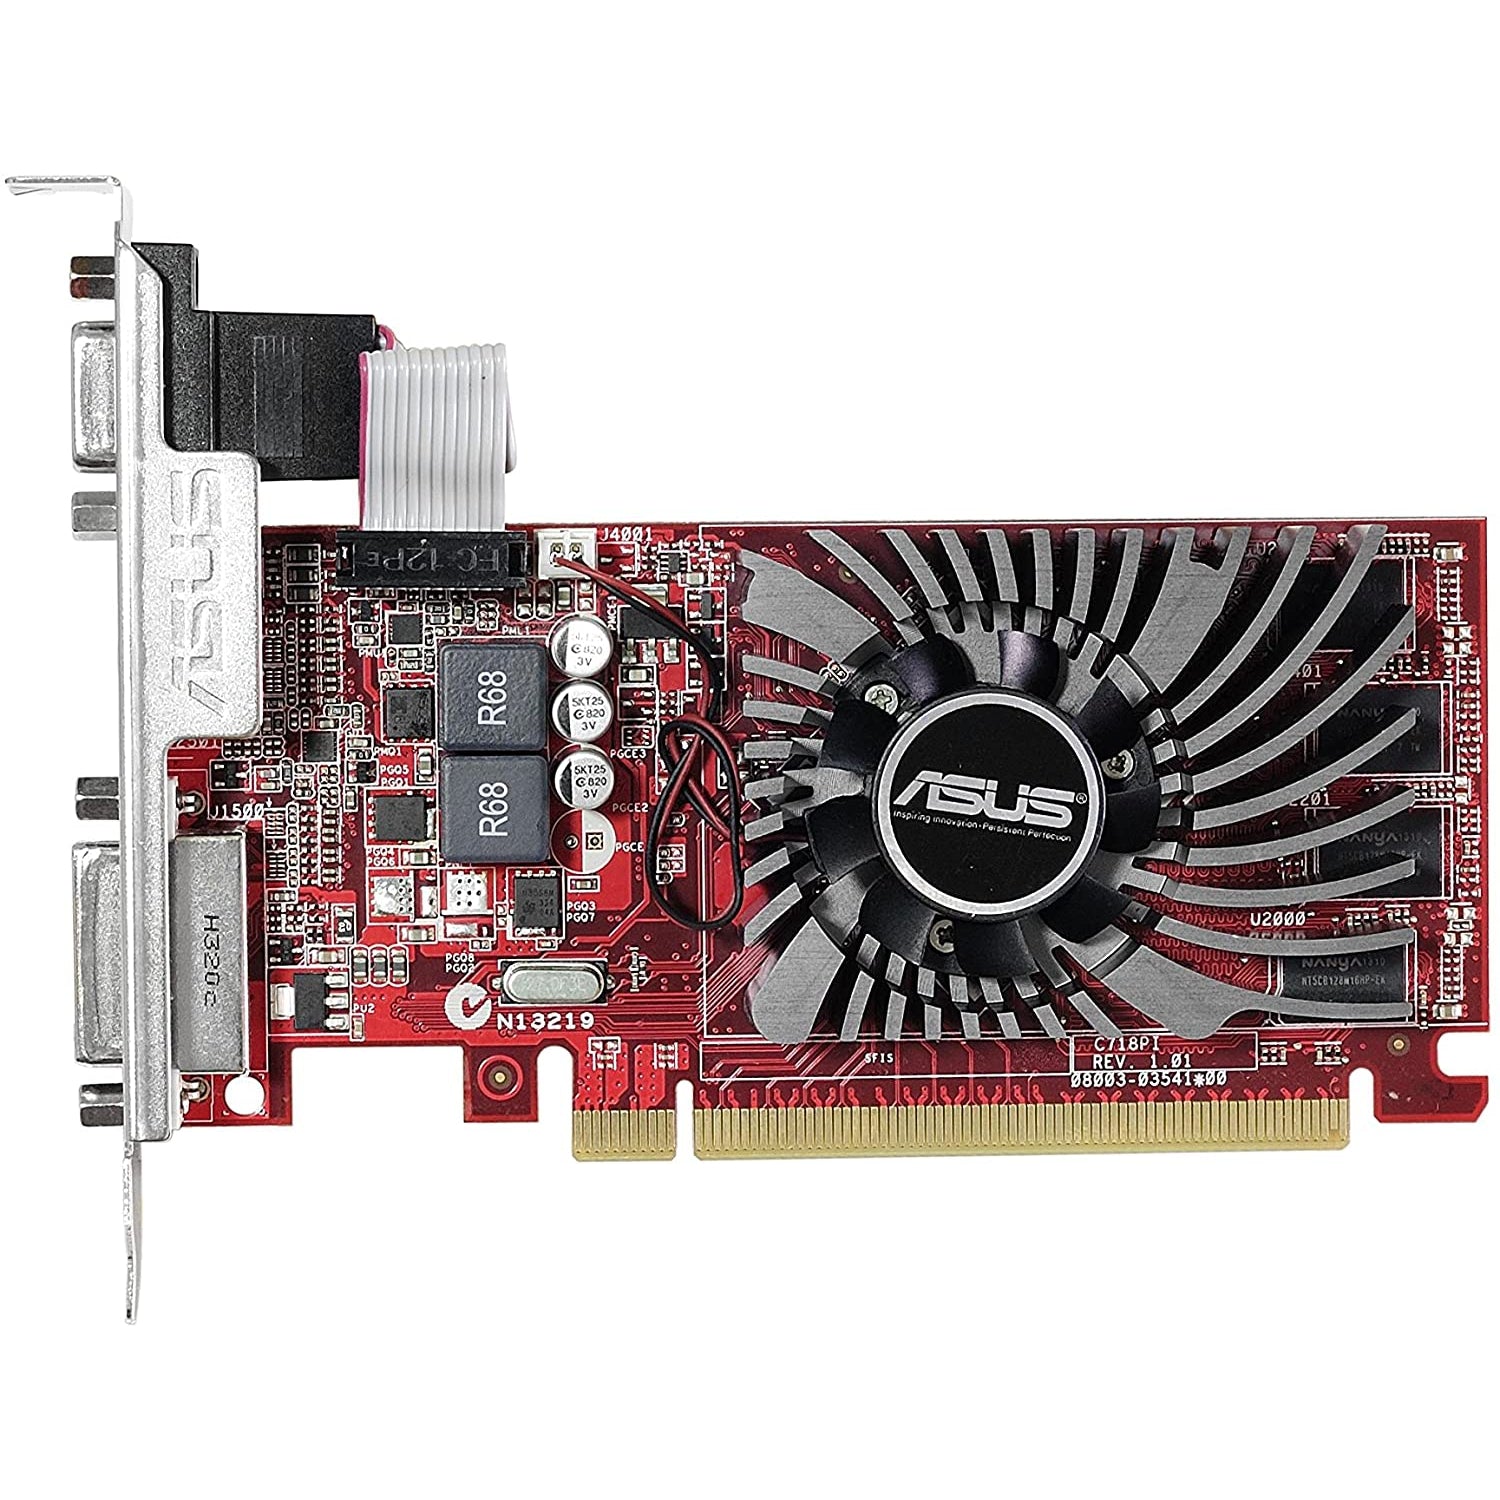 ASUS AMD Radeon R7240 2 GB DDR3 Graphics Card (PCI Express 3.0, HDMI, DVI-D, 128-Bit, Dust-Proof Fan, GPU Tweak Utility)